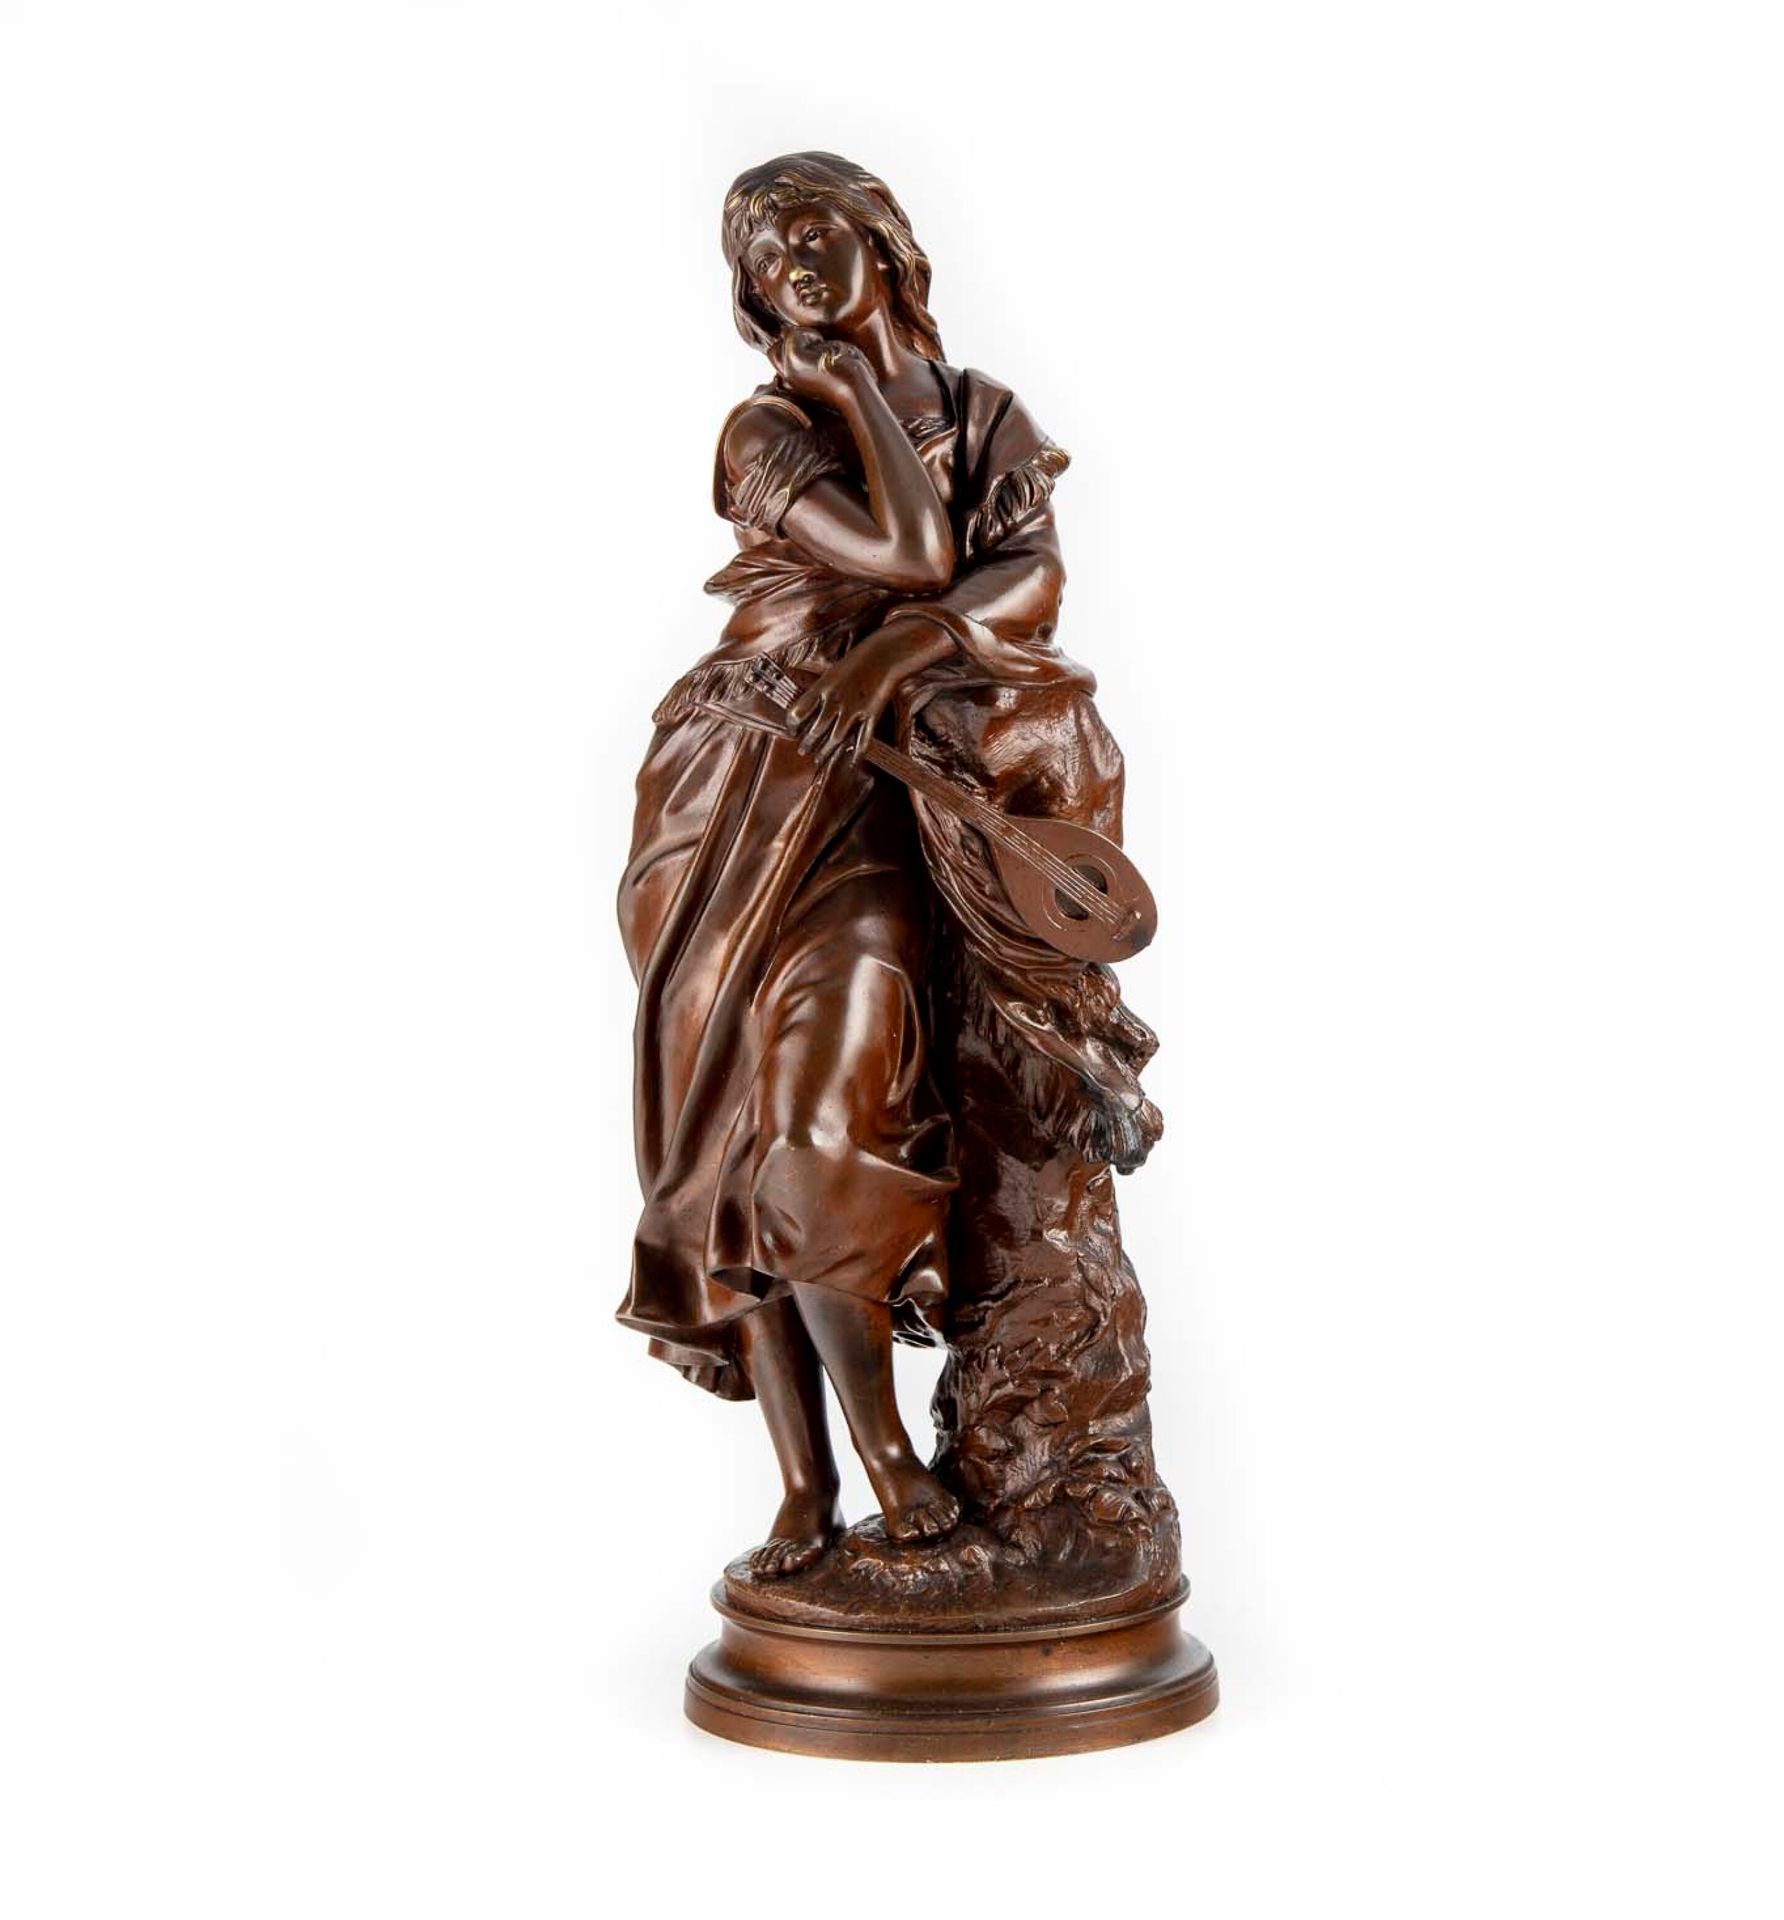 GAUDEZ Adrien Etienne GAUDEZ (1845-1902)

Mignon

Sculpture in patinated bronze
&hellip;